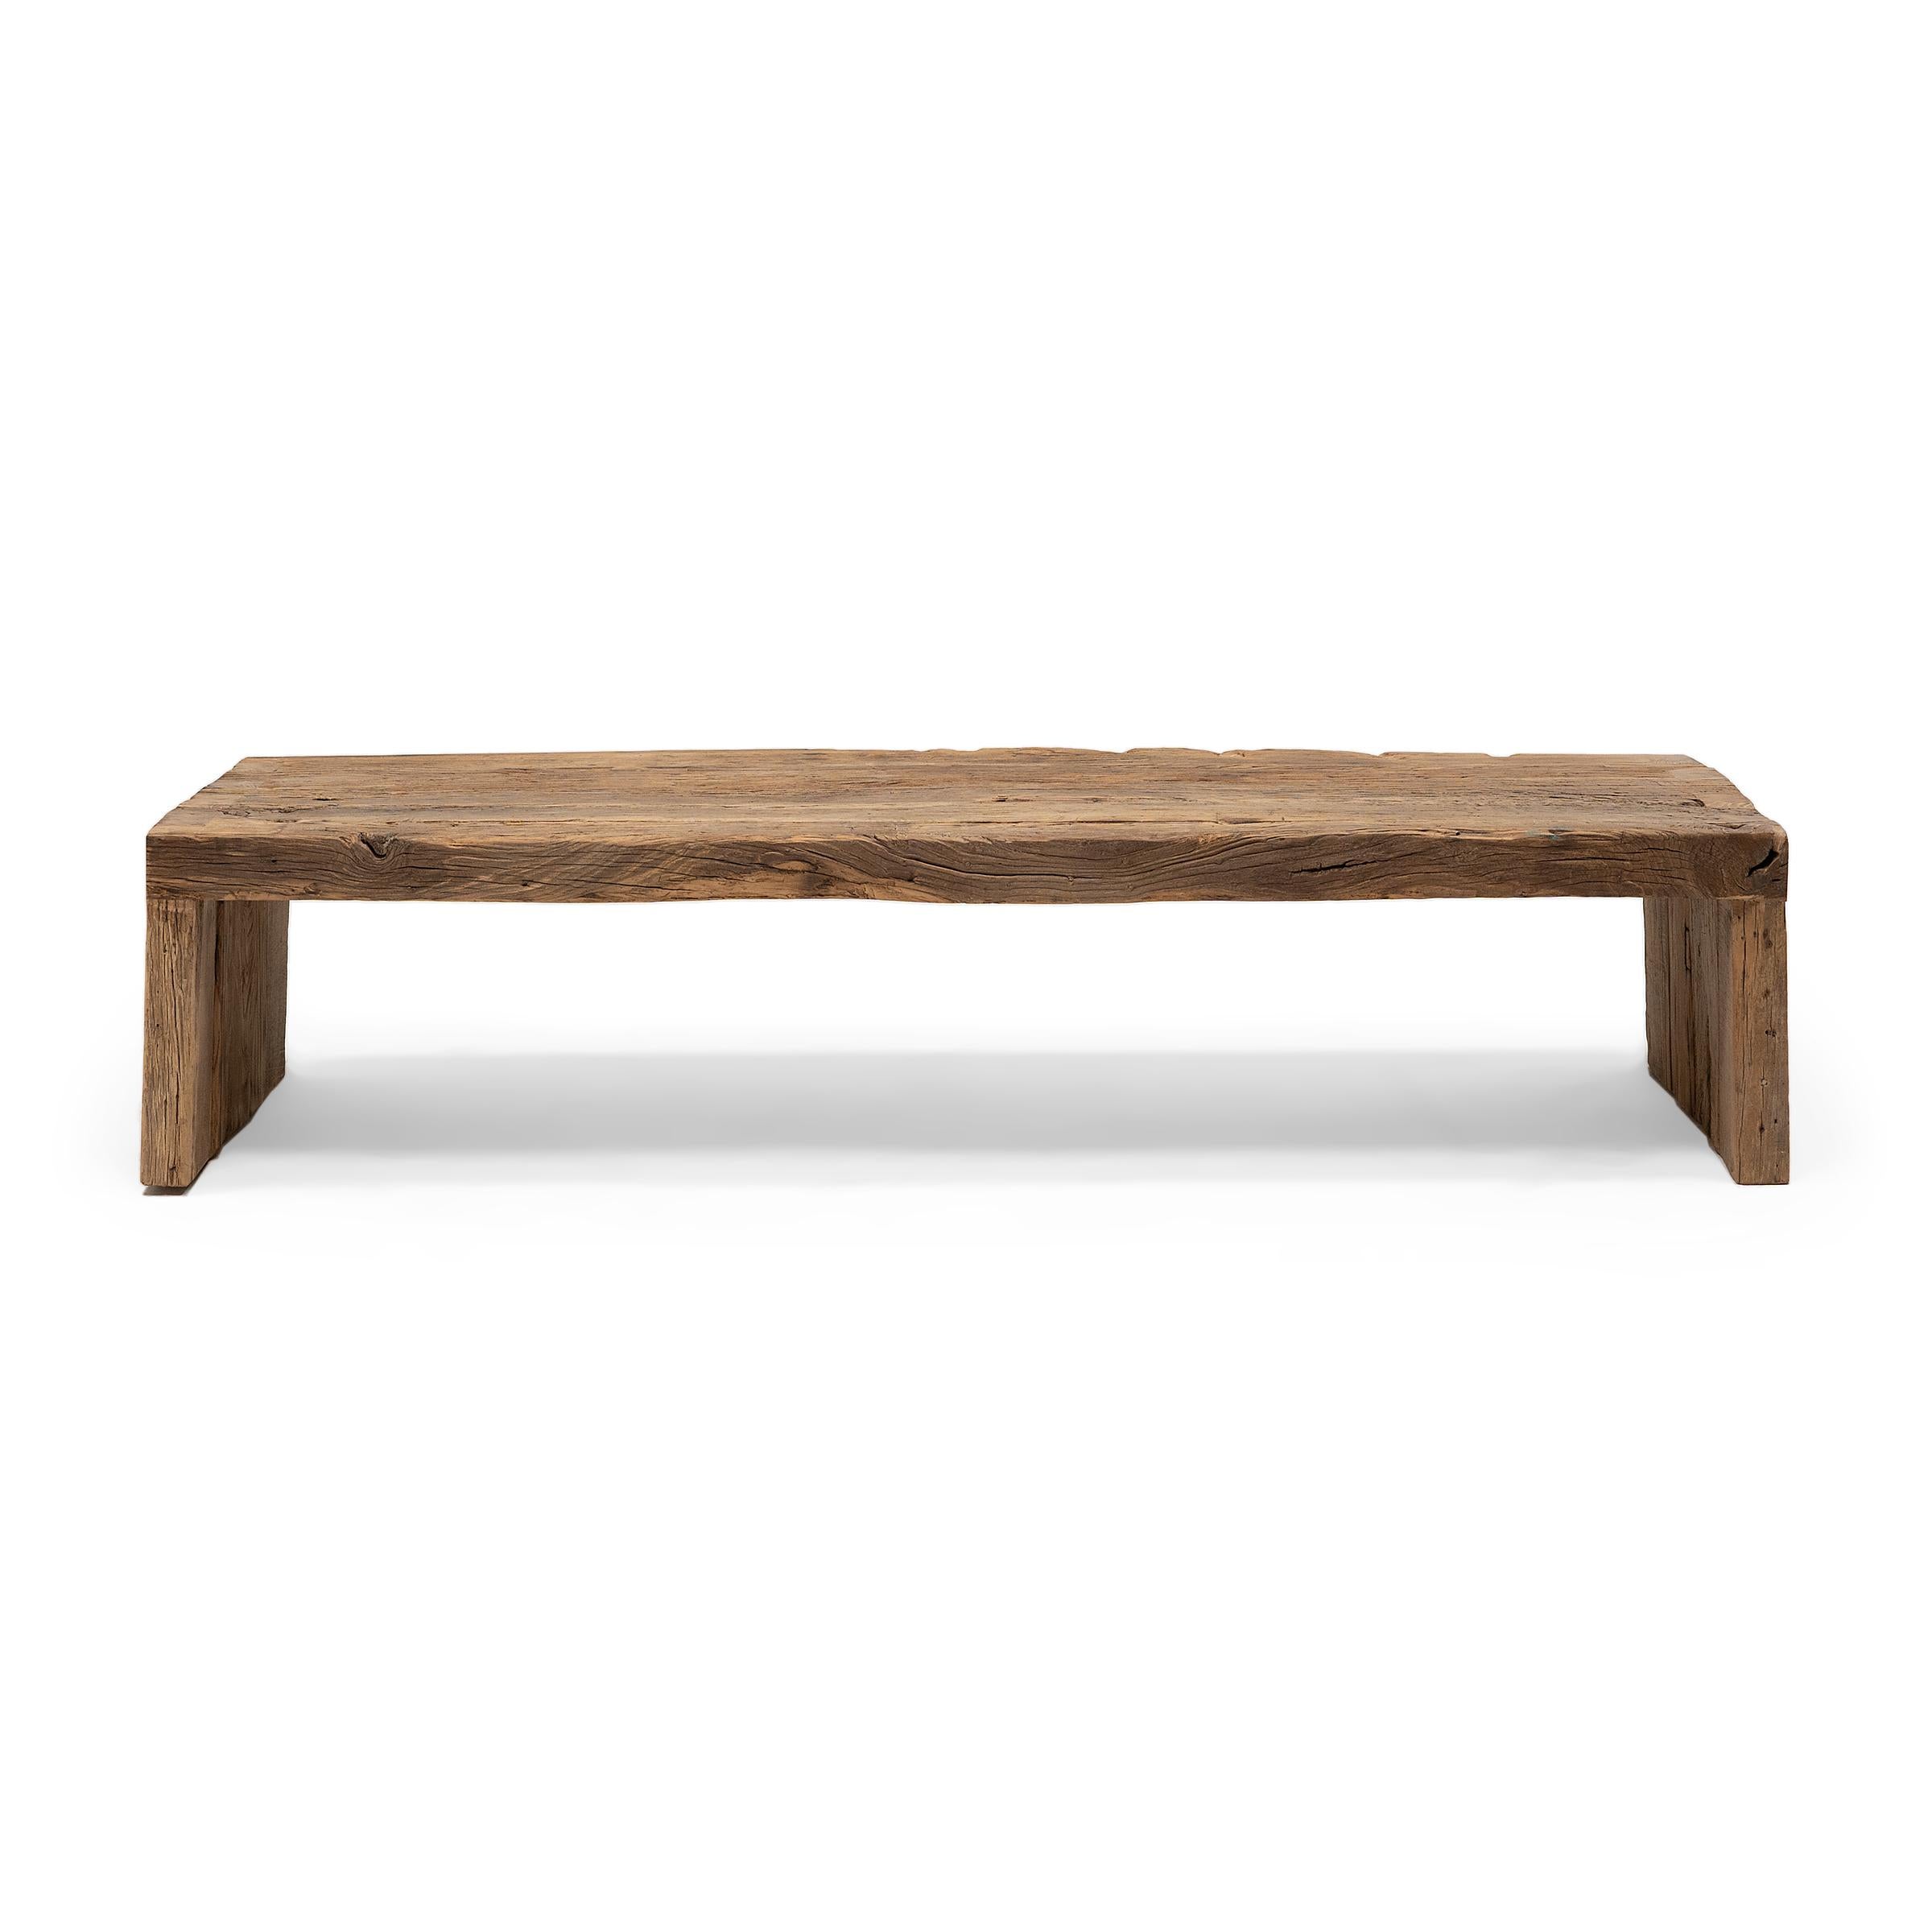 Dieser handwerklich gefertigte niedrige Tisch ist eine Zelebrierung des Wabi-Sabi-Stils. Der Tisch ist aus dickem Ulmenholz gefertigt, das aus der Architektur der Qing-Dynastie stammt. Er hat ein minimalistisches Wasserfalldesign und ist